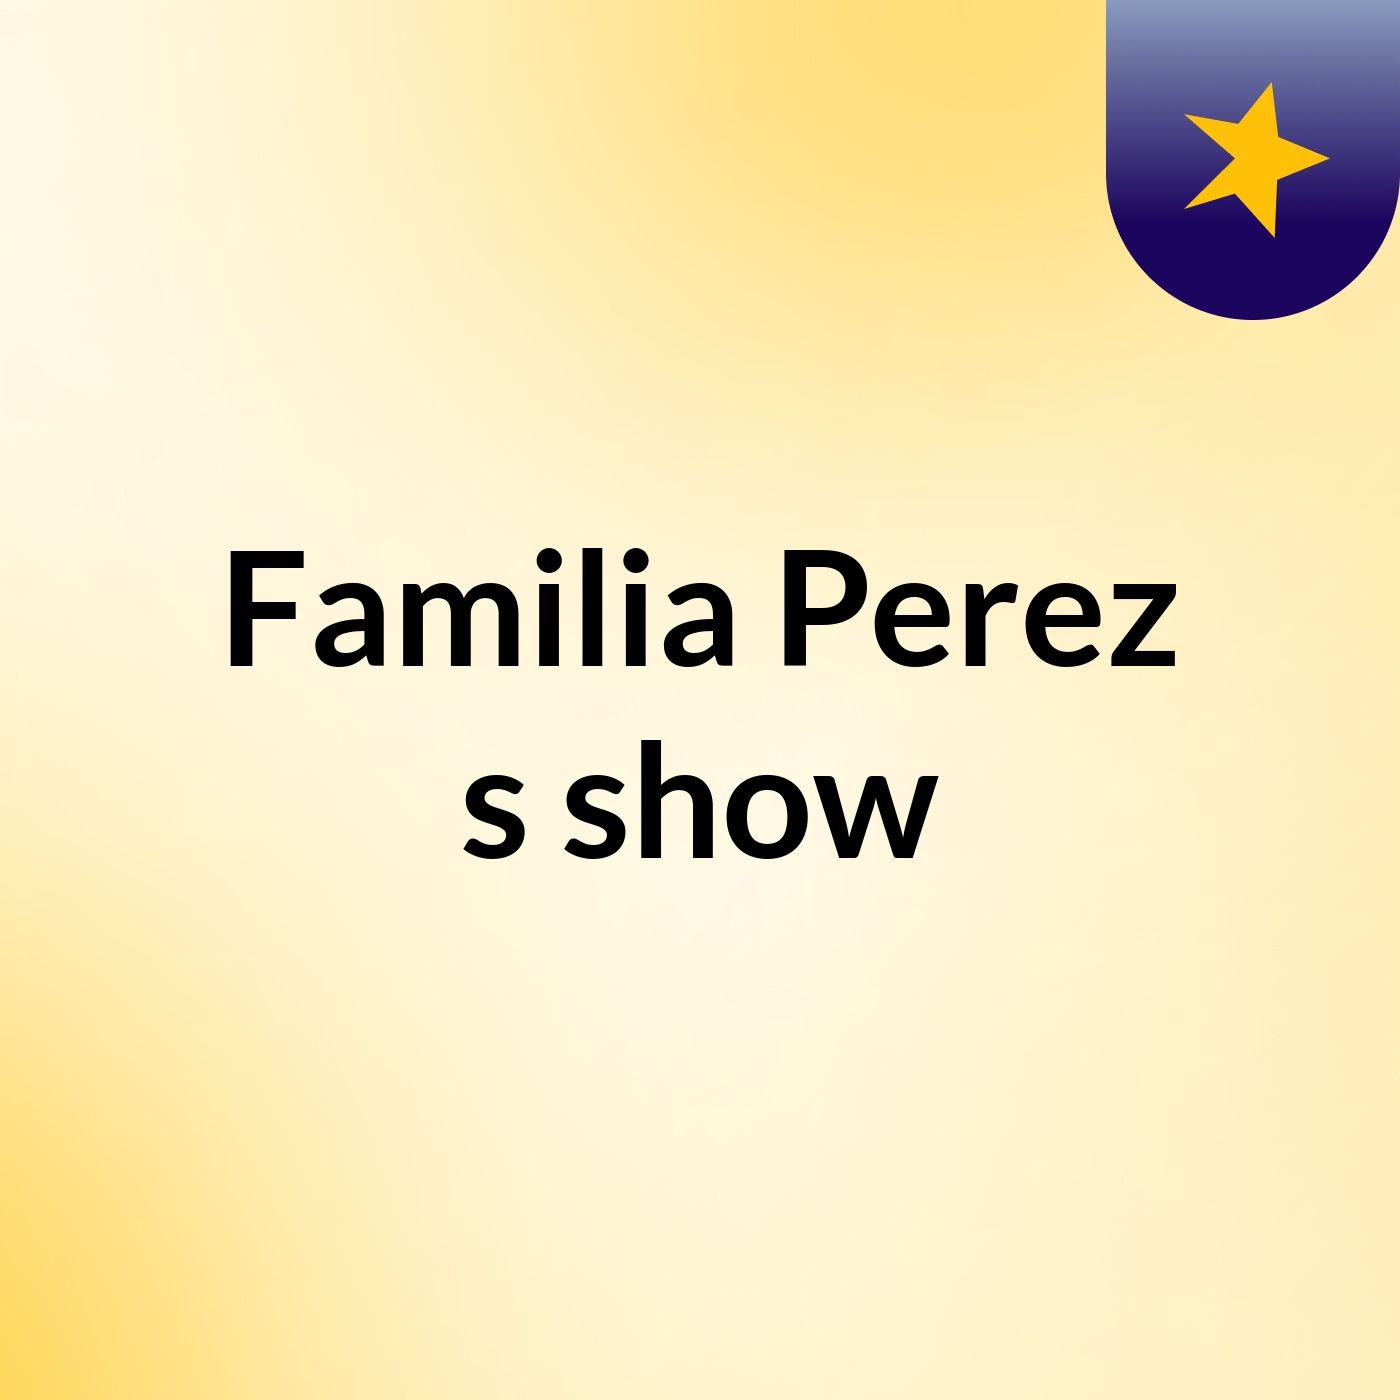 Familia Perez's show